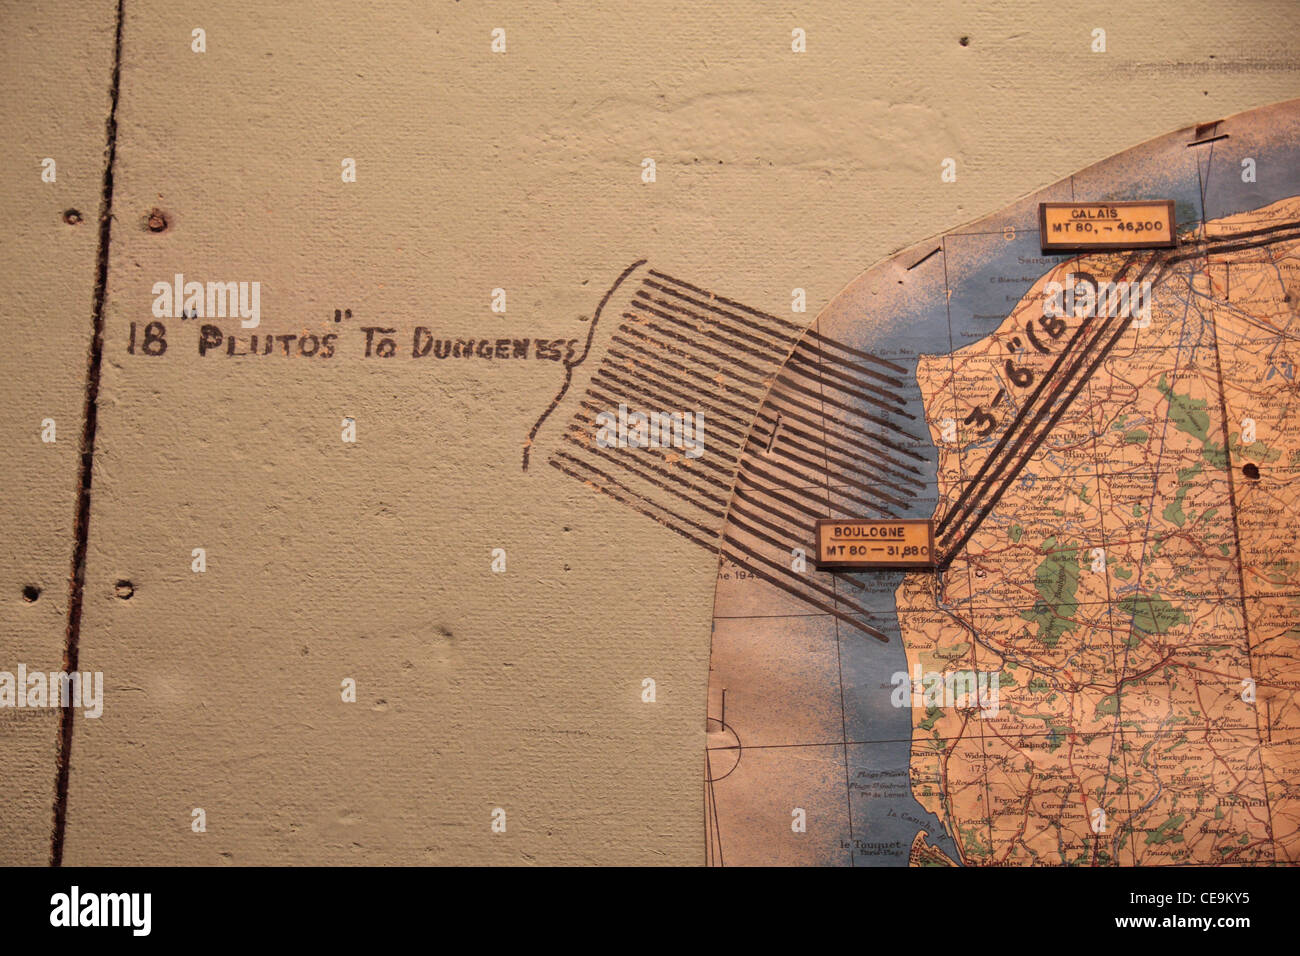 Détail montrant des pipelines de Pluton sur la carte dans la salle de guerre, musée de la Reddition (Musée de la reddition), Reims, France.ISO400 Banque D'Images